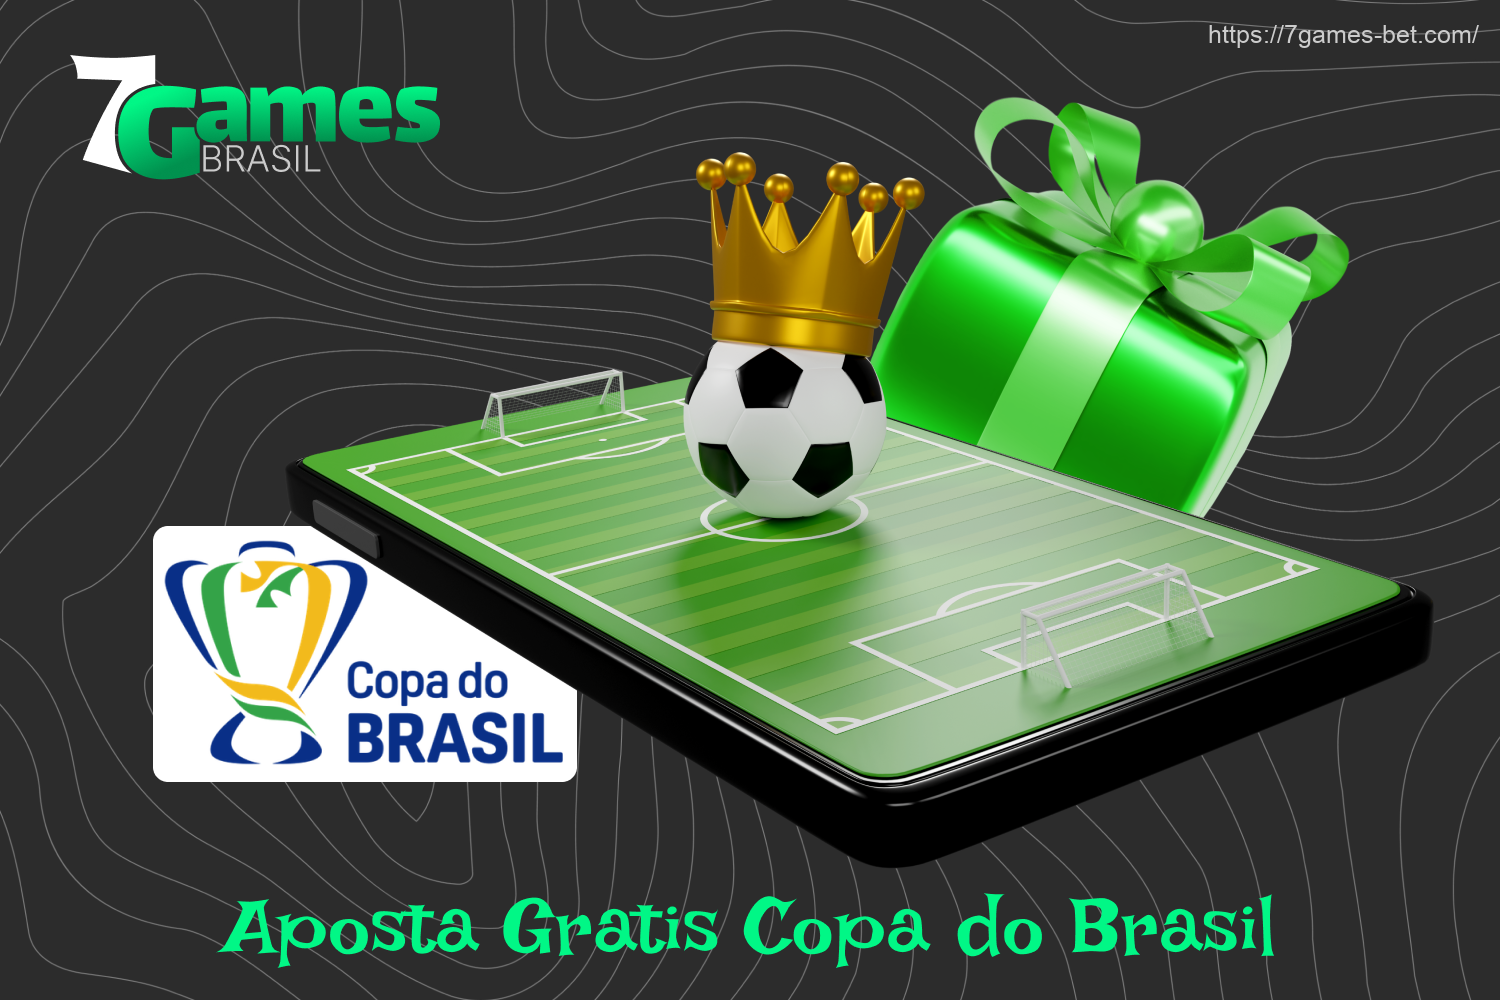 Com o bônus Aposta Gratis Copa do Brasil, os brasileiros receberão uma aposta grátis igual ao número de gols marcados na partida em que fizerem uma previsão